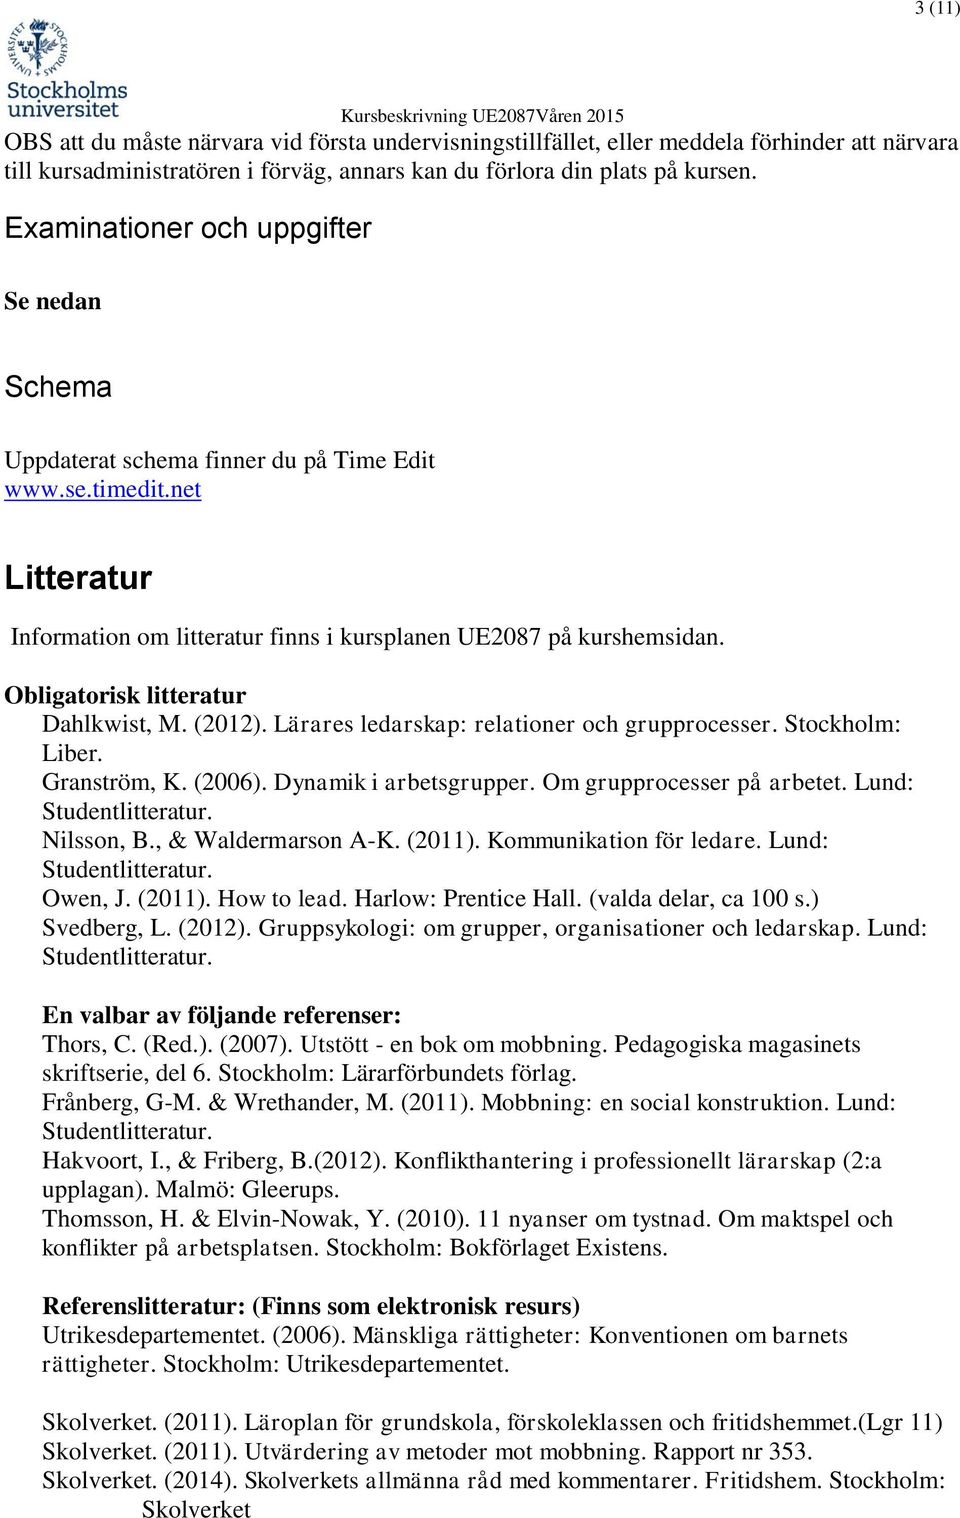 Obligatorisk litteratur Dahlkwist, M. (2012). Lärares ledarskap: relationer och grupprocesser. Stockholm: Liber. Granström, K. (2006). Dynamik i arbetsgrupper. Om grupprocesser på arbetet.